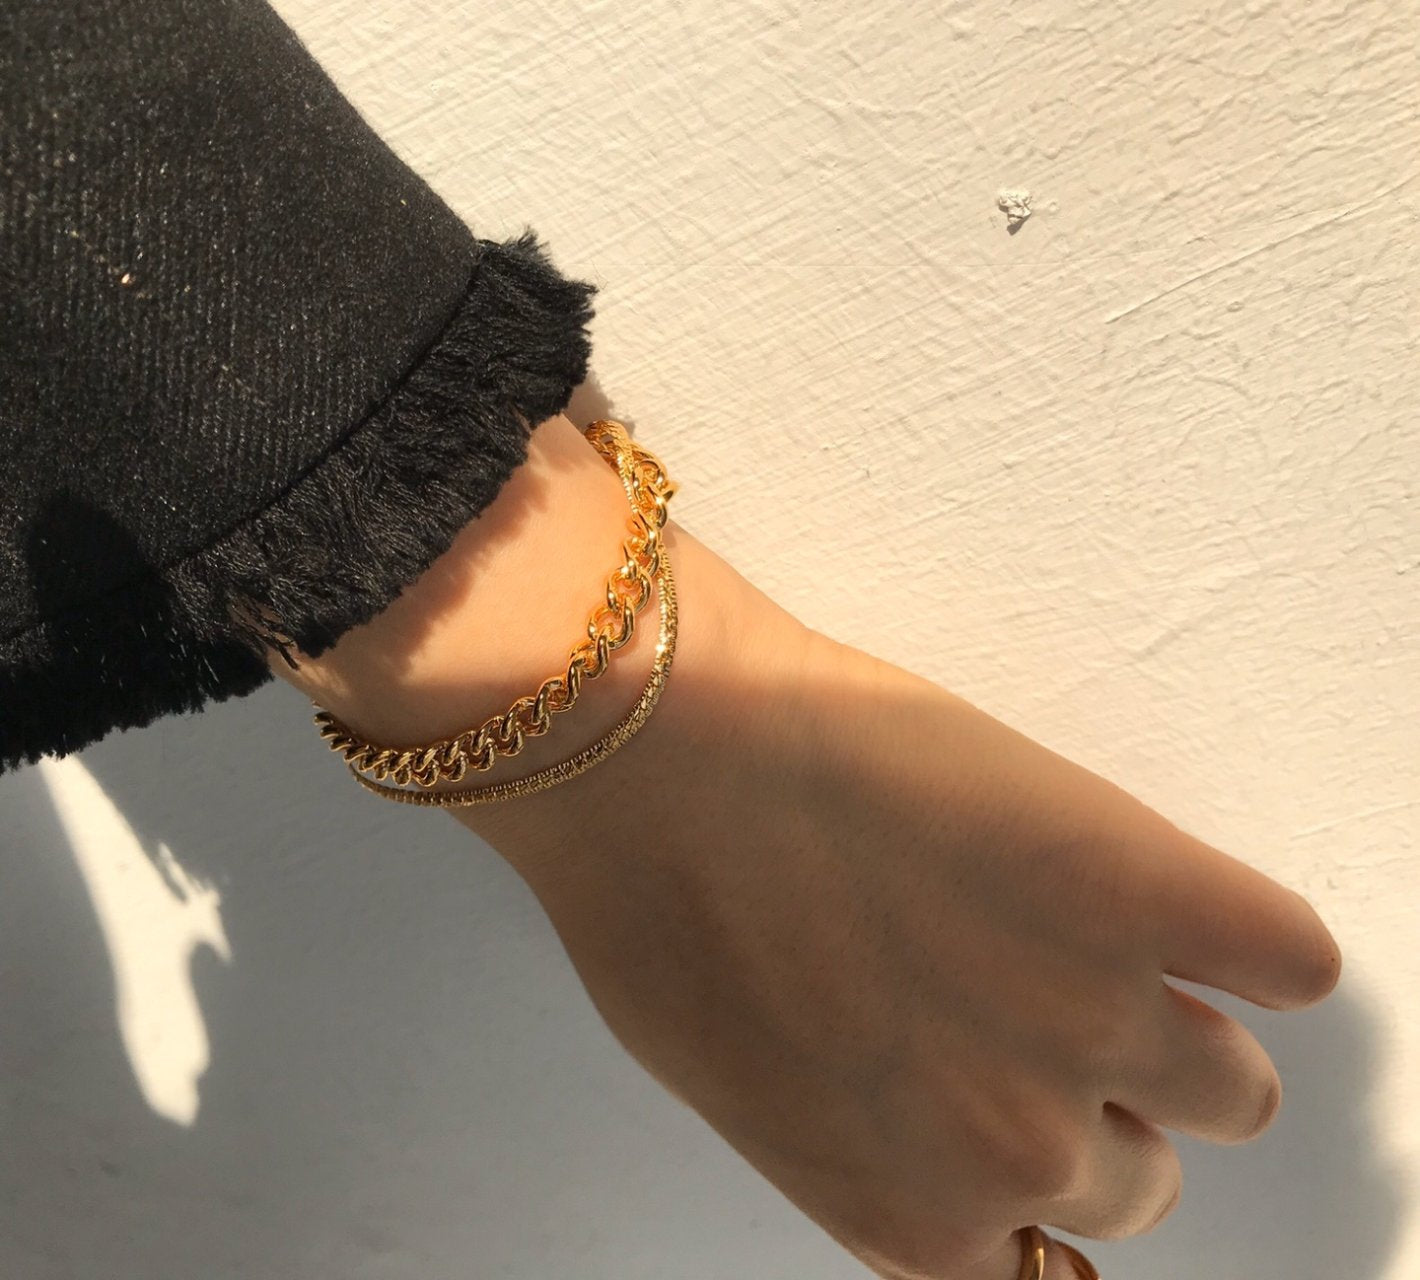 Cara Bracelet in Gold